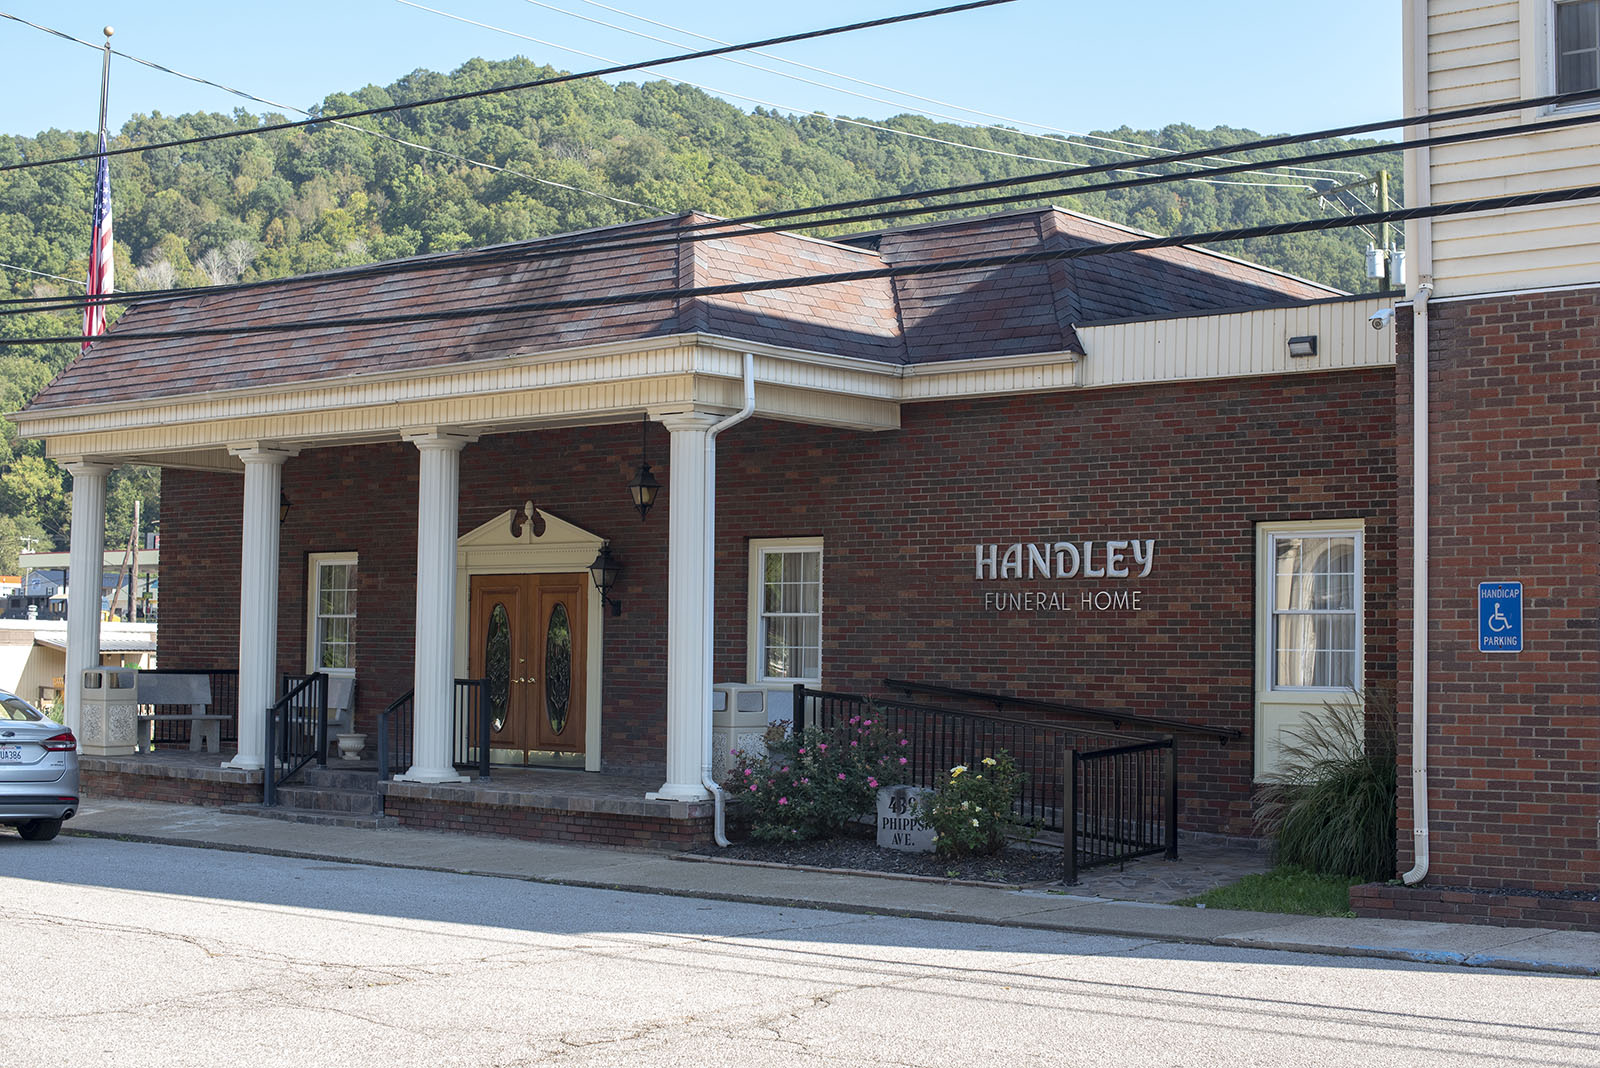 Handley Funeral Home Phipps Ave, Danville West Virginia 25053